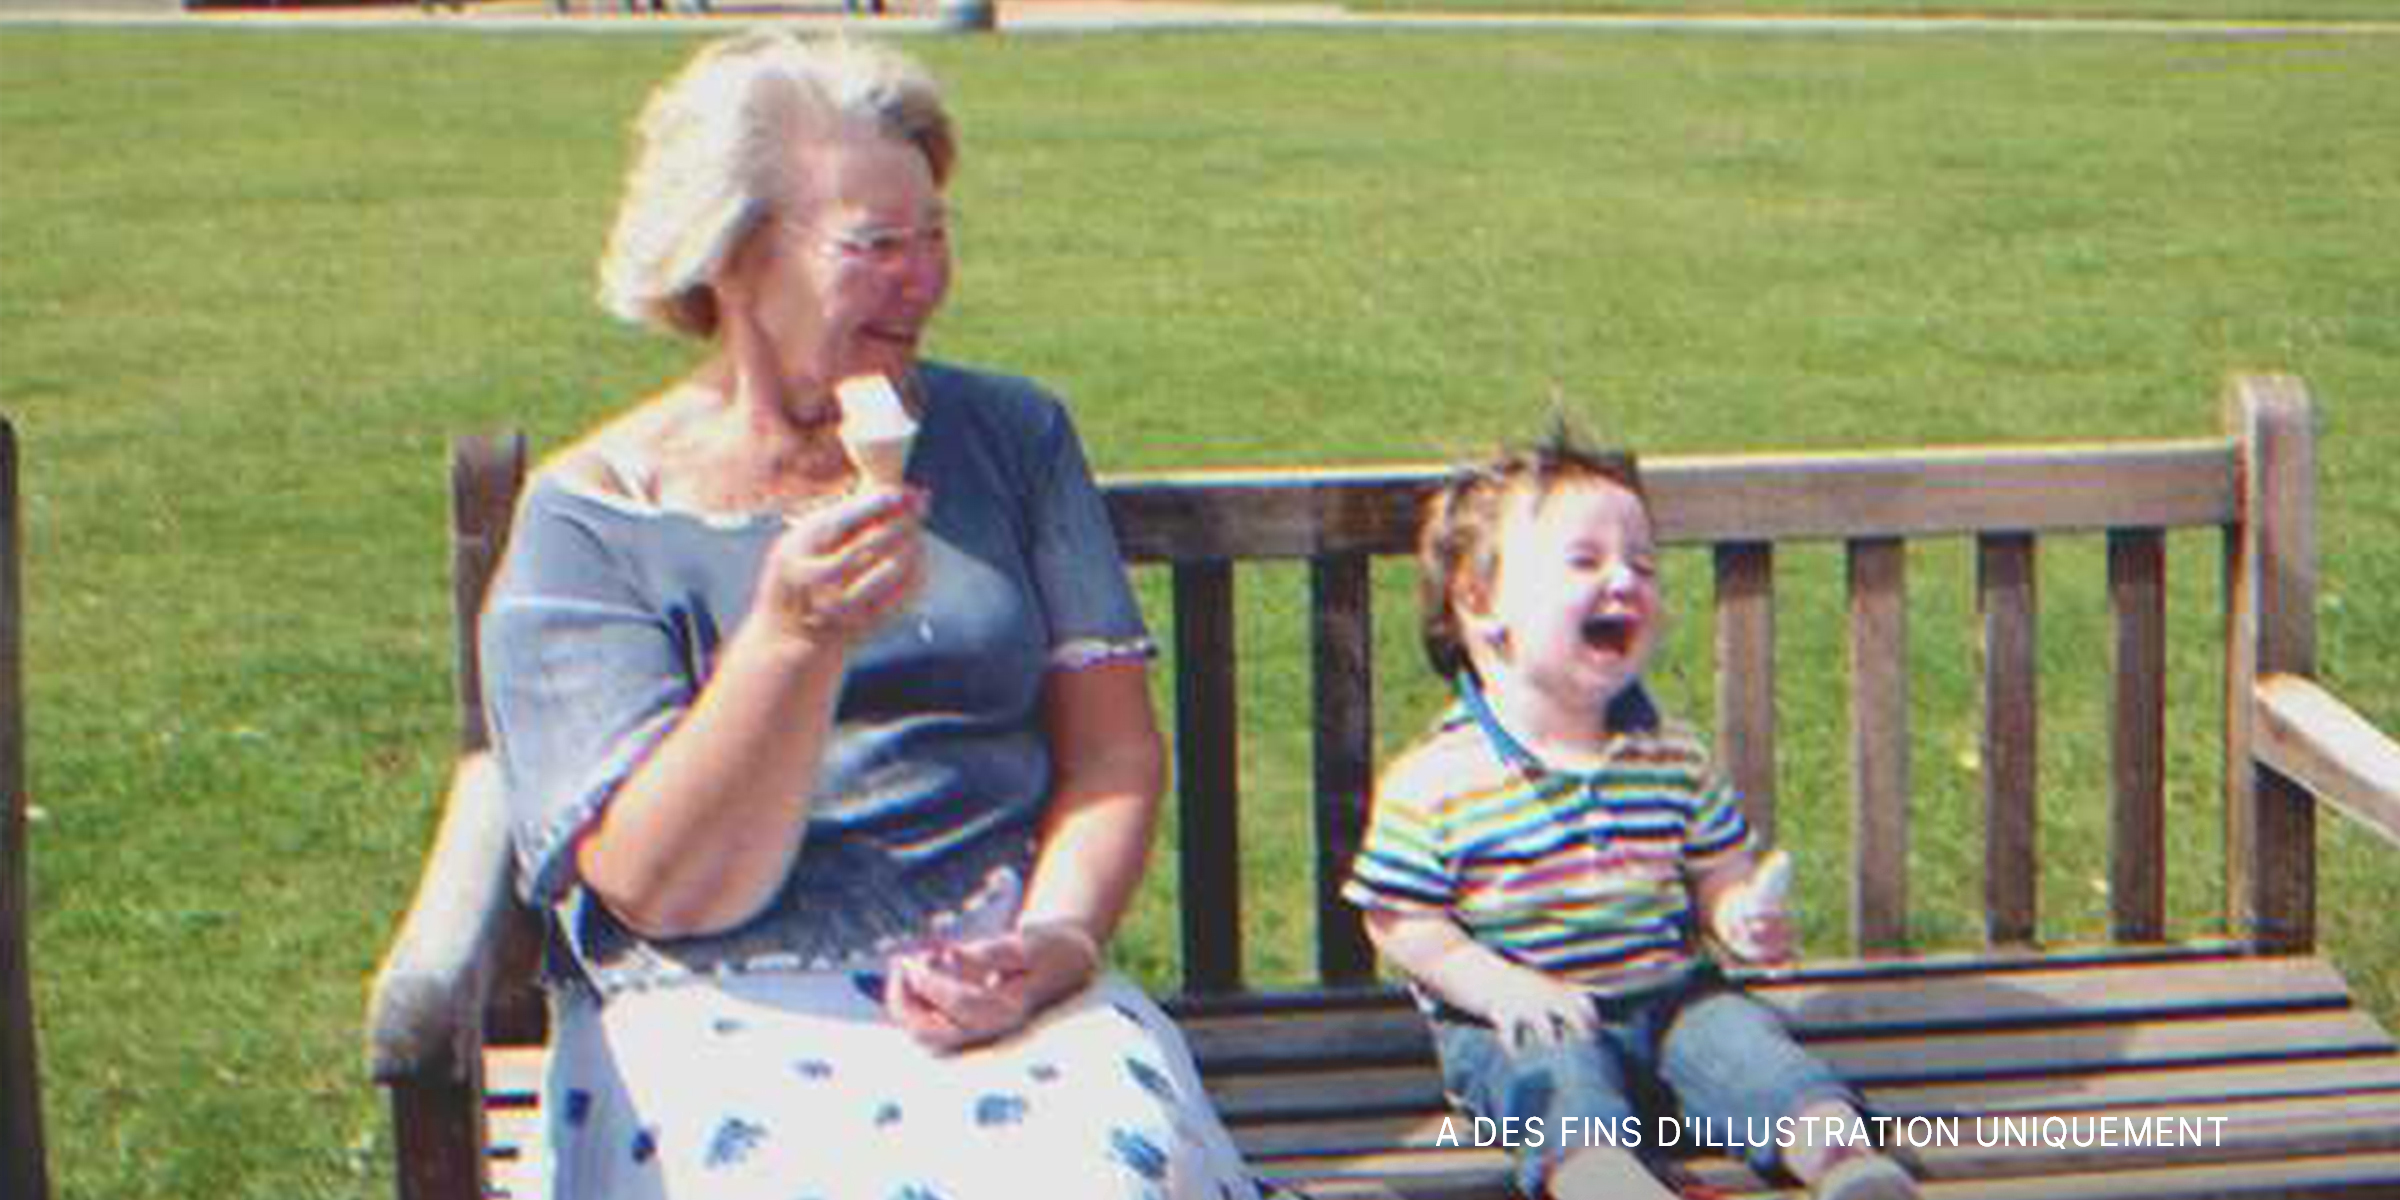 Une vieille dame qui rit à côté d'un bébé heureux | Source : Flickr/Julian Tysoe